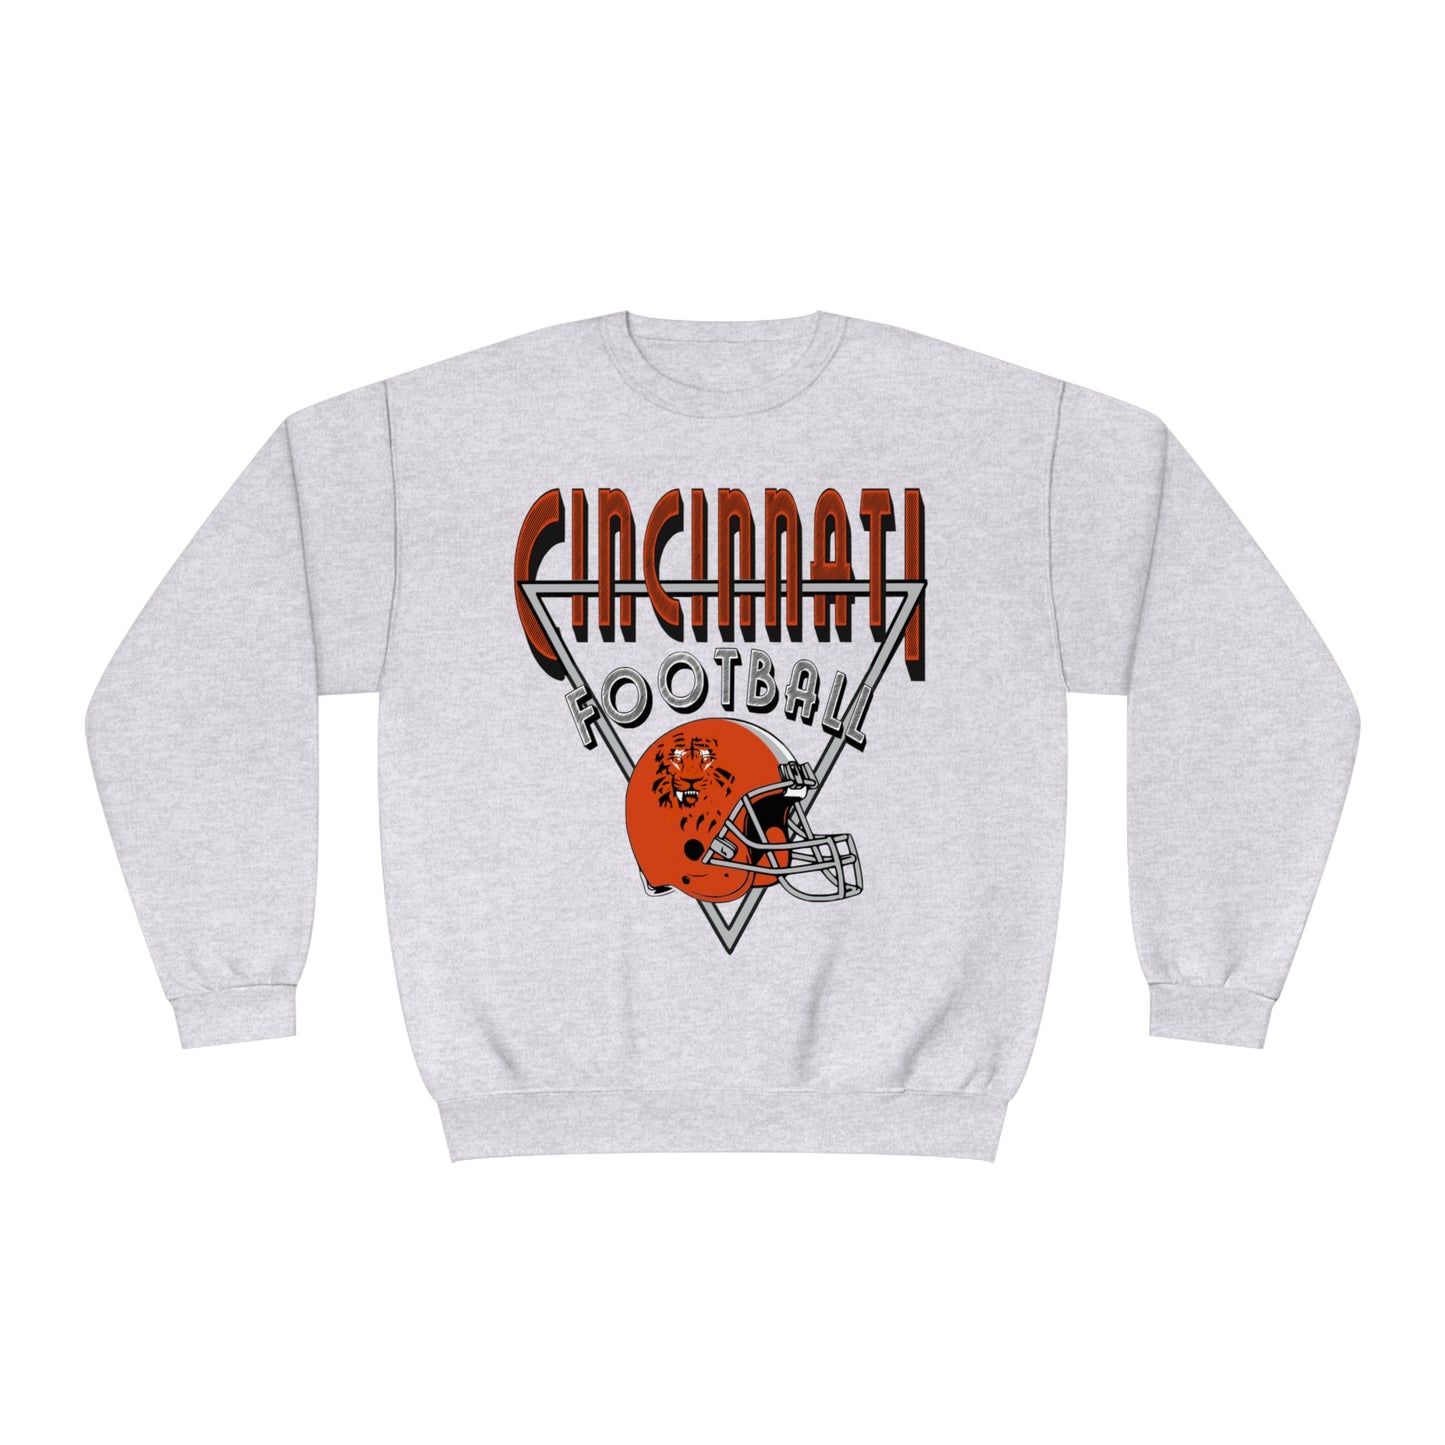 Vintage Cincinnati Bengals Crewneck Sweatshirt - 90's NFL Football Hoodie - Men's & Women's 90's Oversized Light Gray